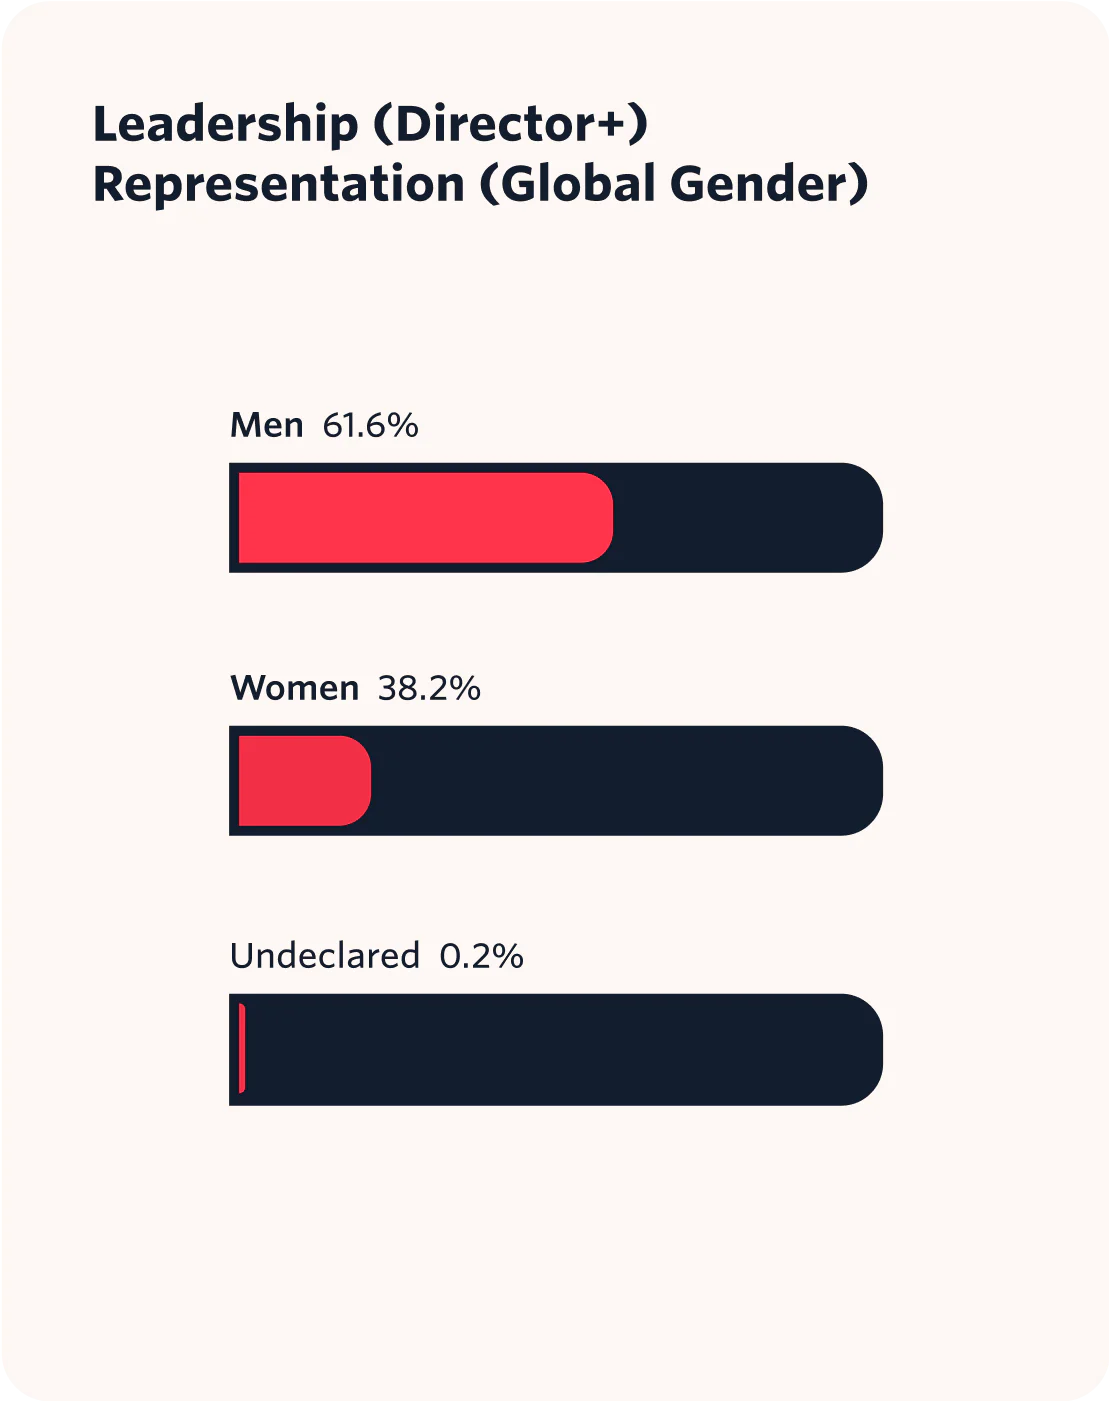 Leadership (Director+) Representation (Global Gender) data represented in a bar chart.